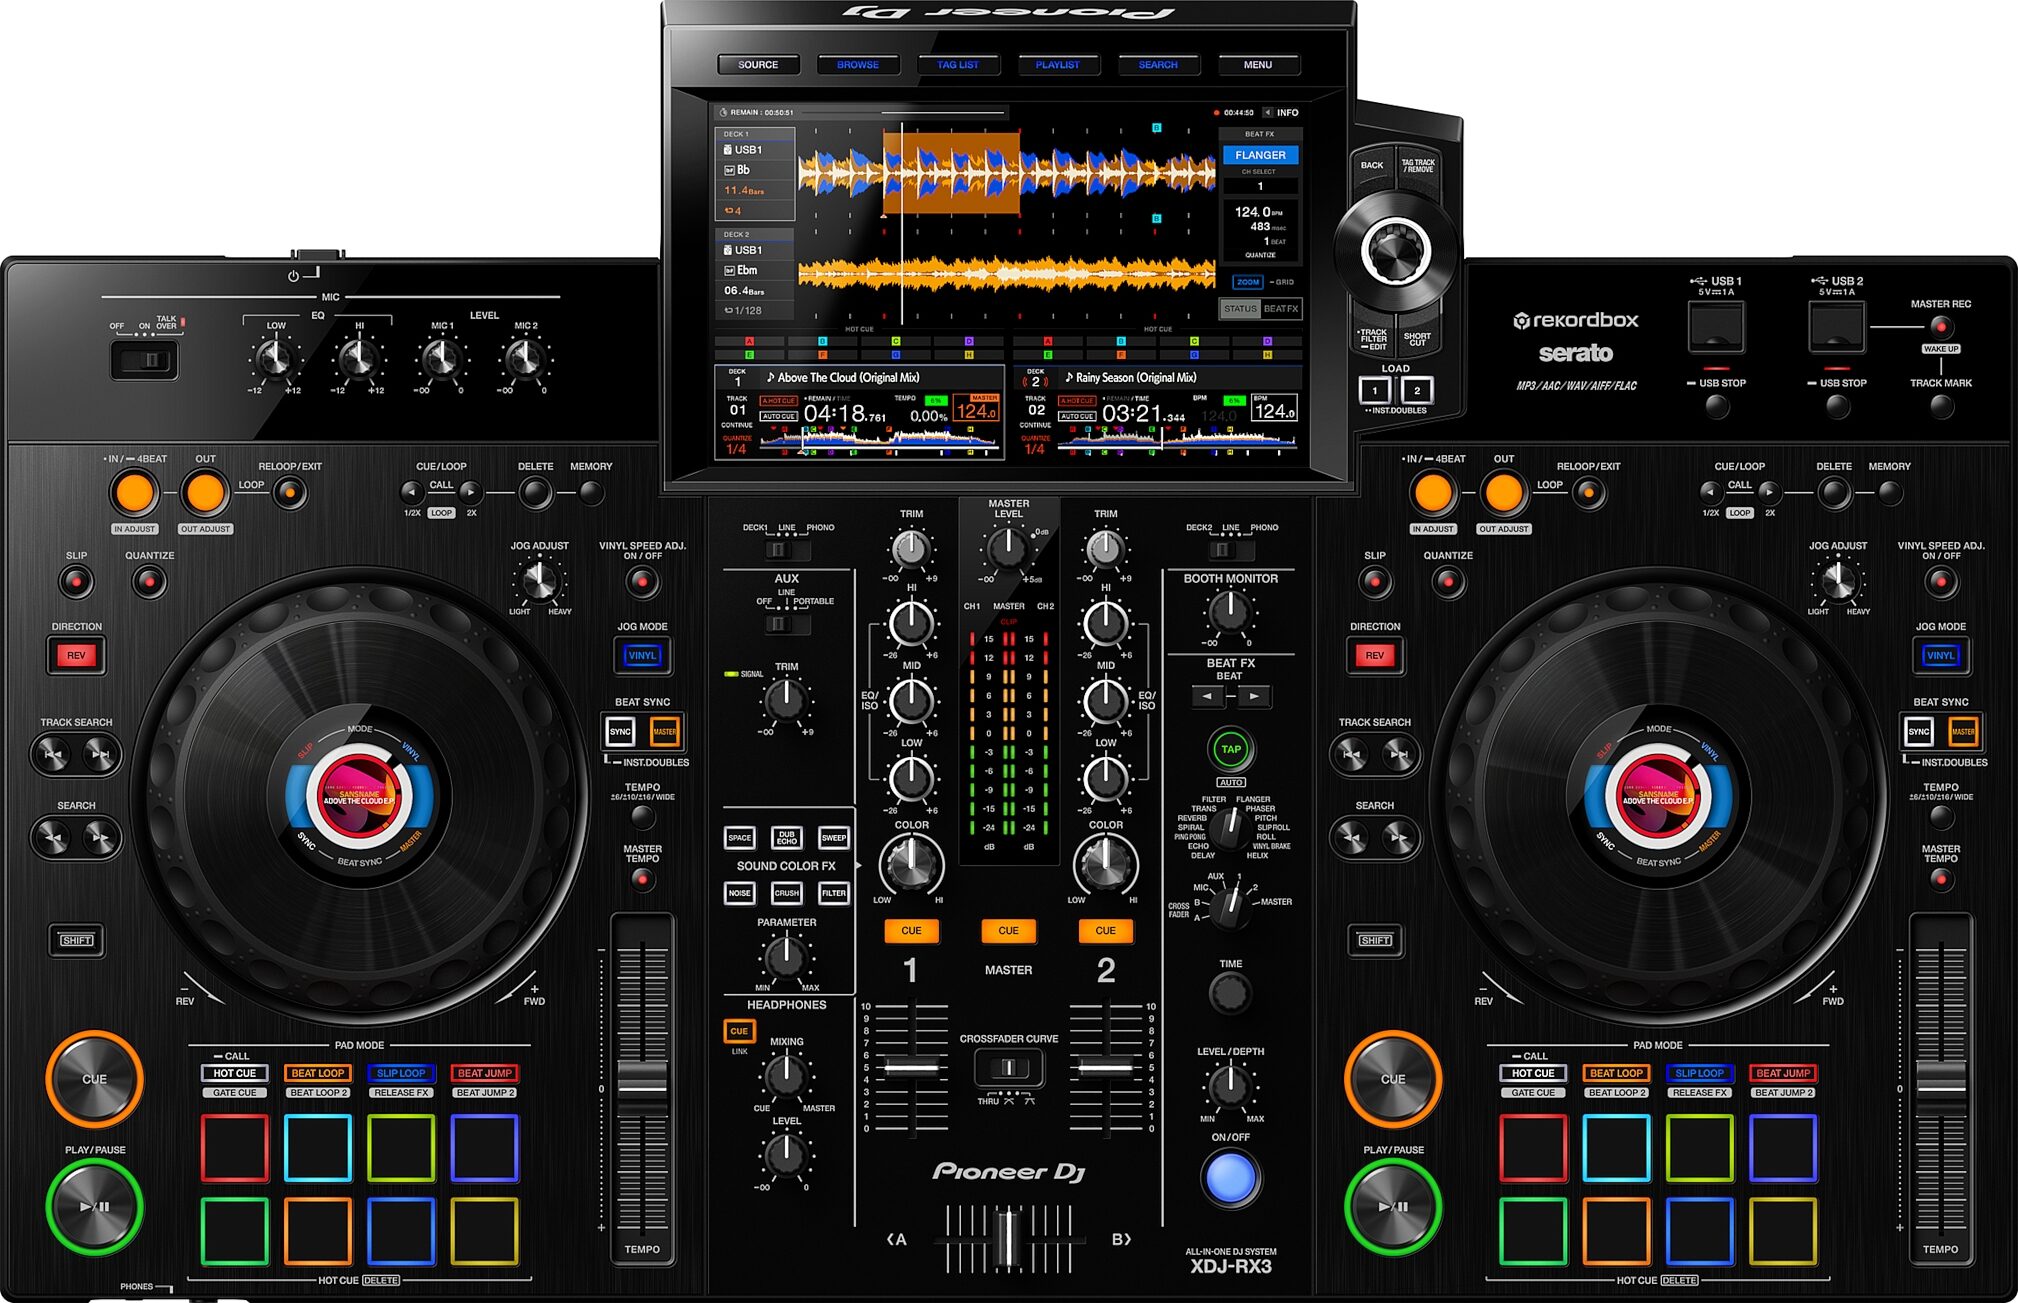 programma opmerking Voorkomen Pioneer DJ XDJ-RX3 DJ System | zZounds